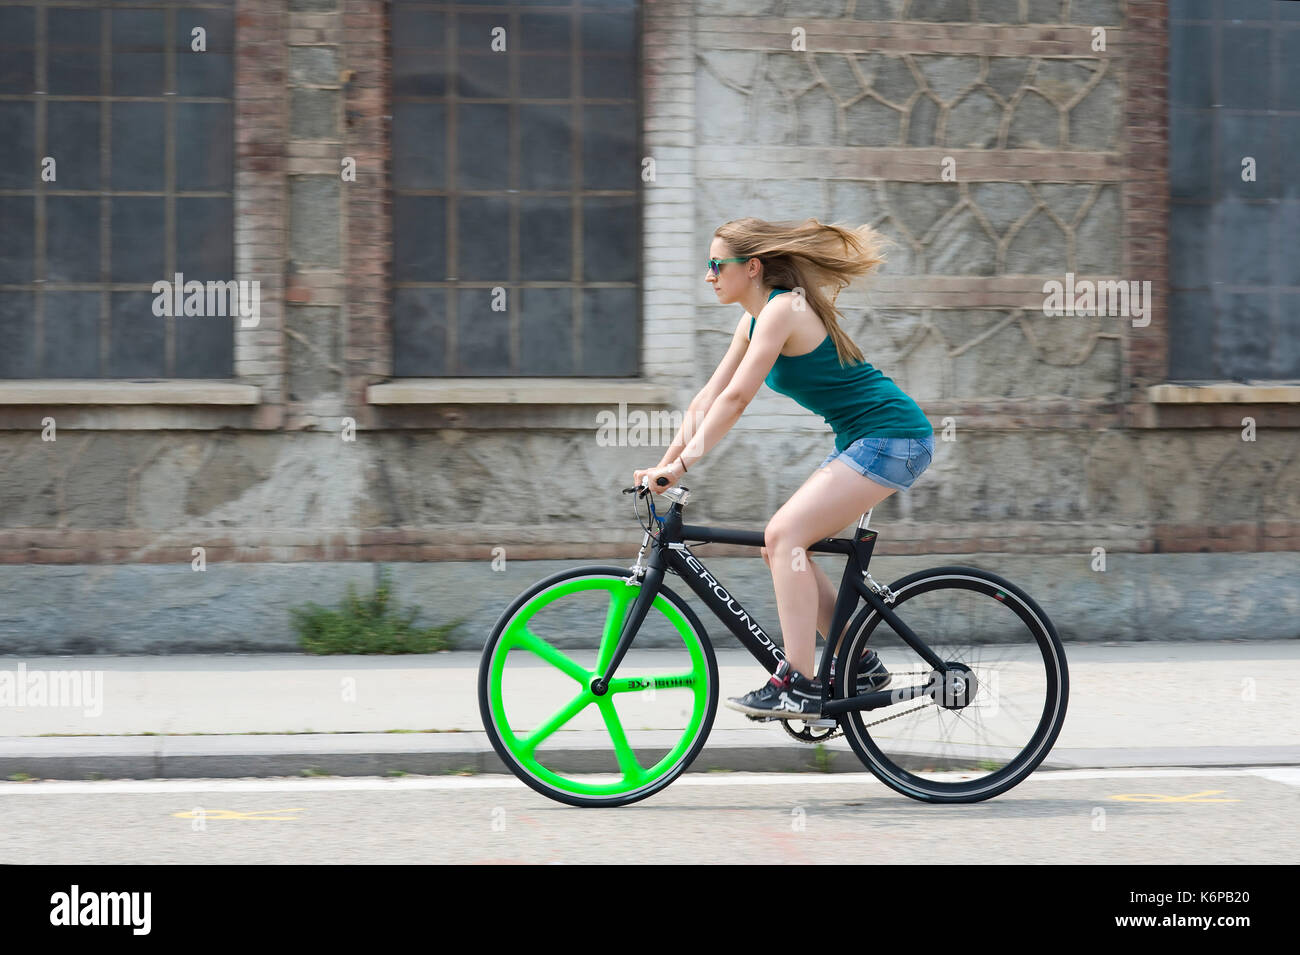 Zeroundici, italien de vélos électriques se déplacent dans la ville Banque D'Images